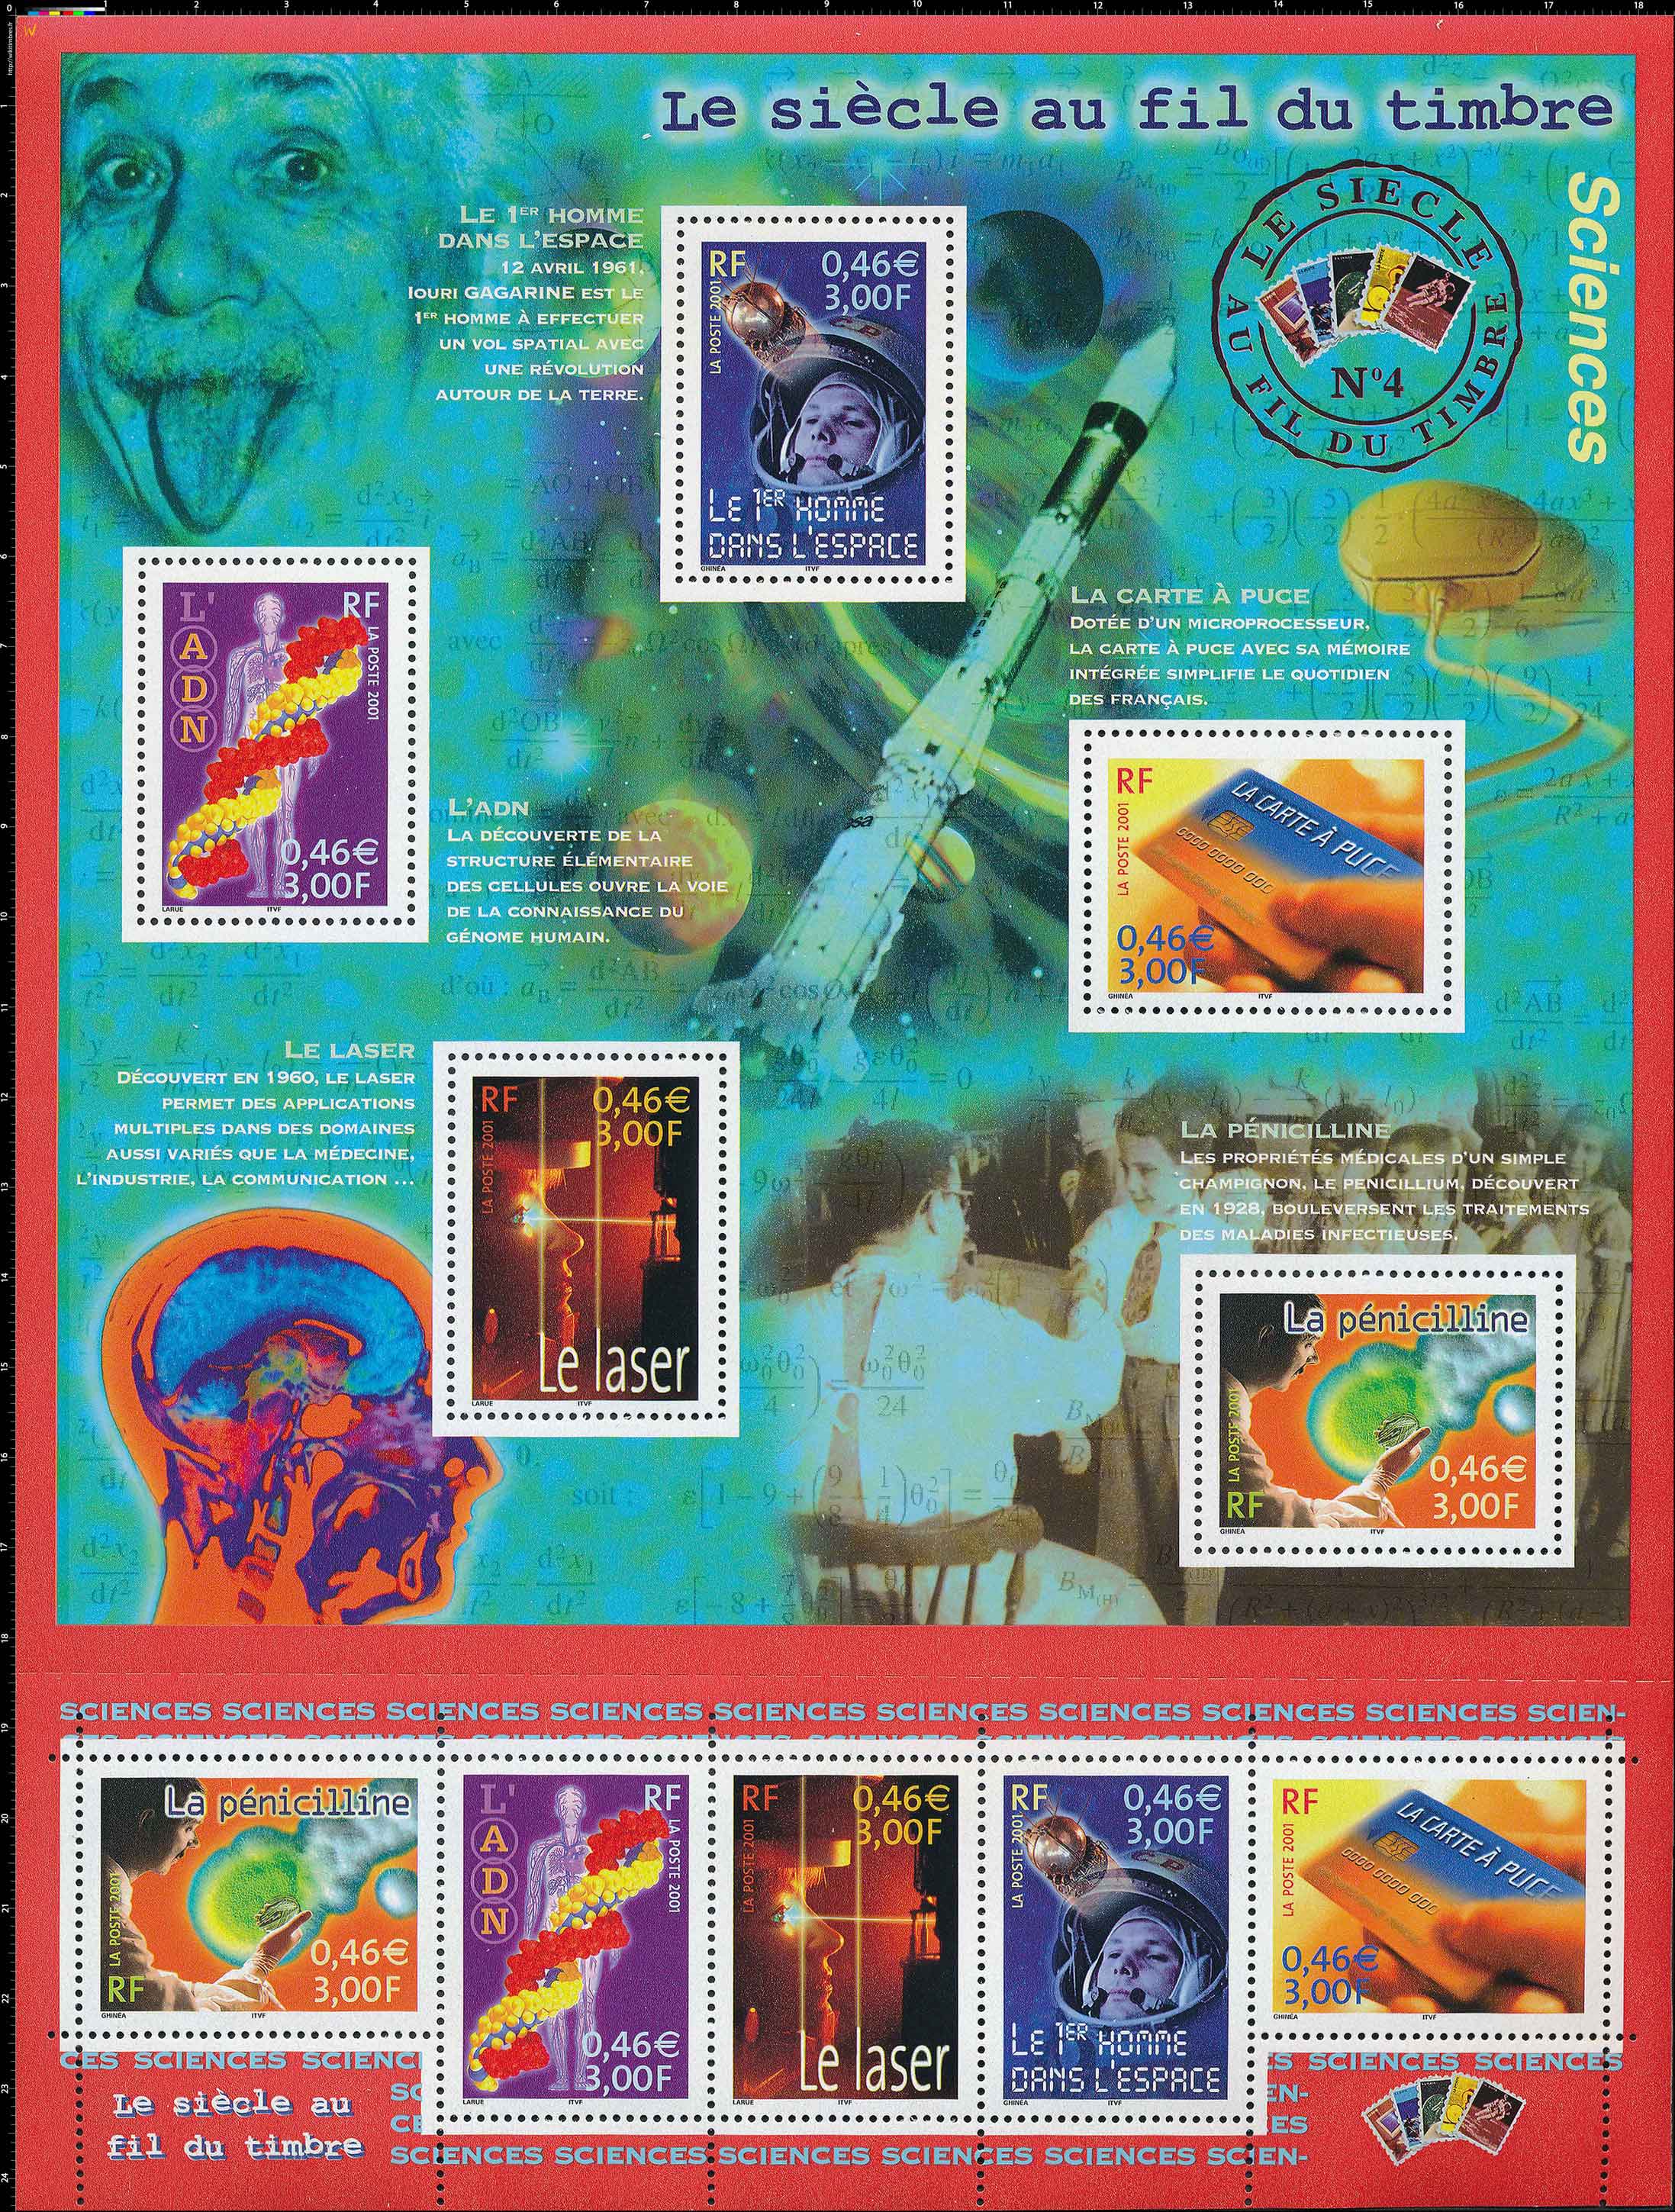 Le siècle au fil du timbre Sciences